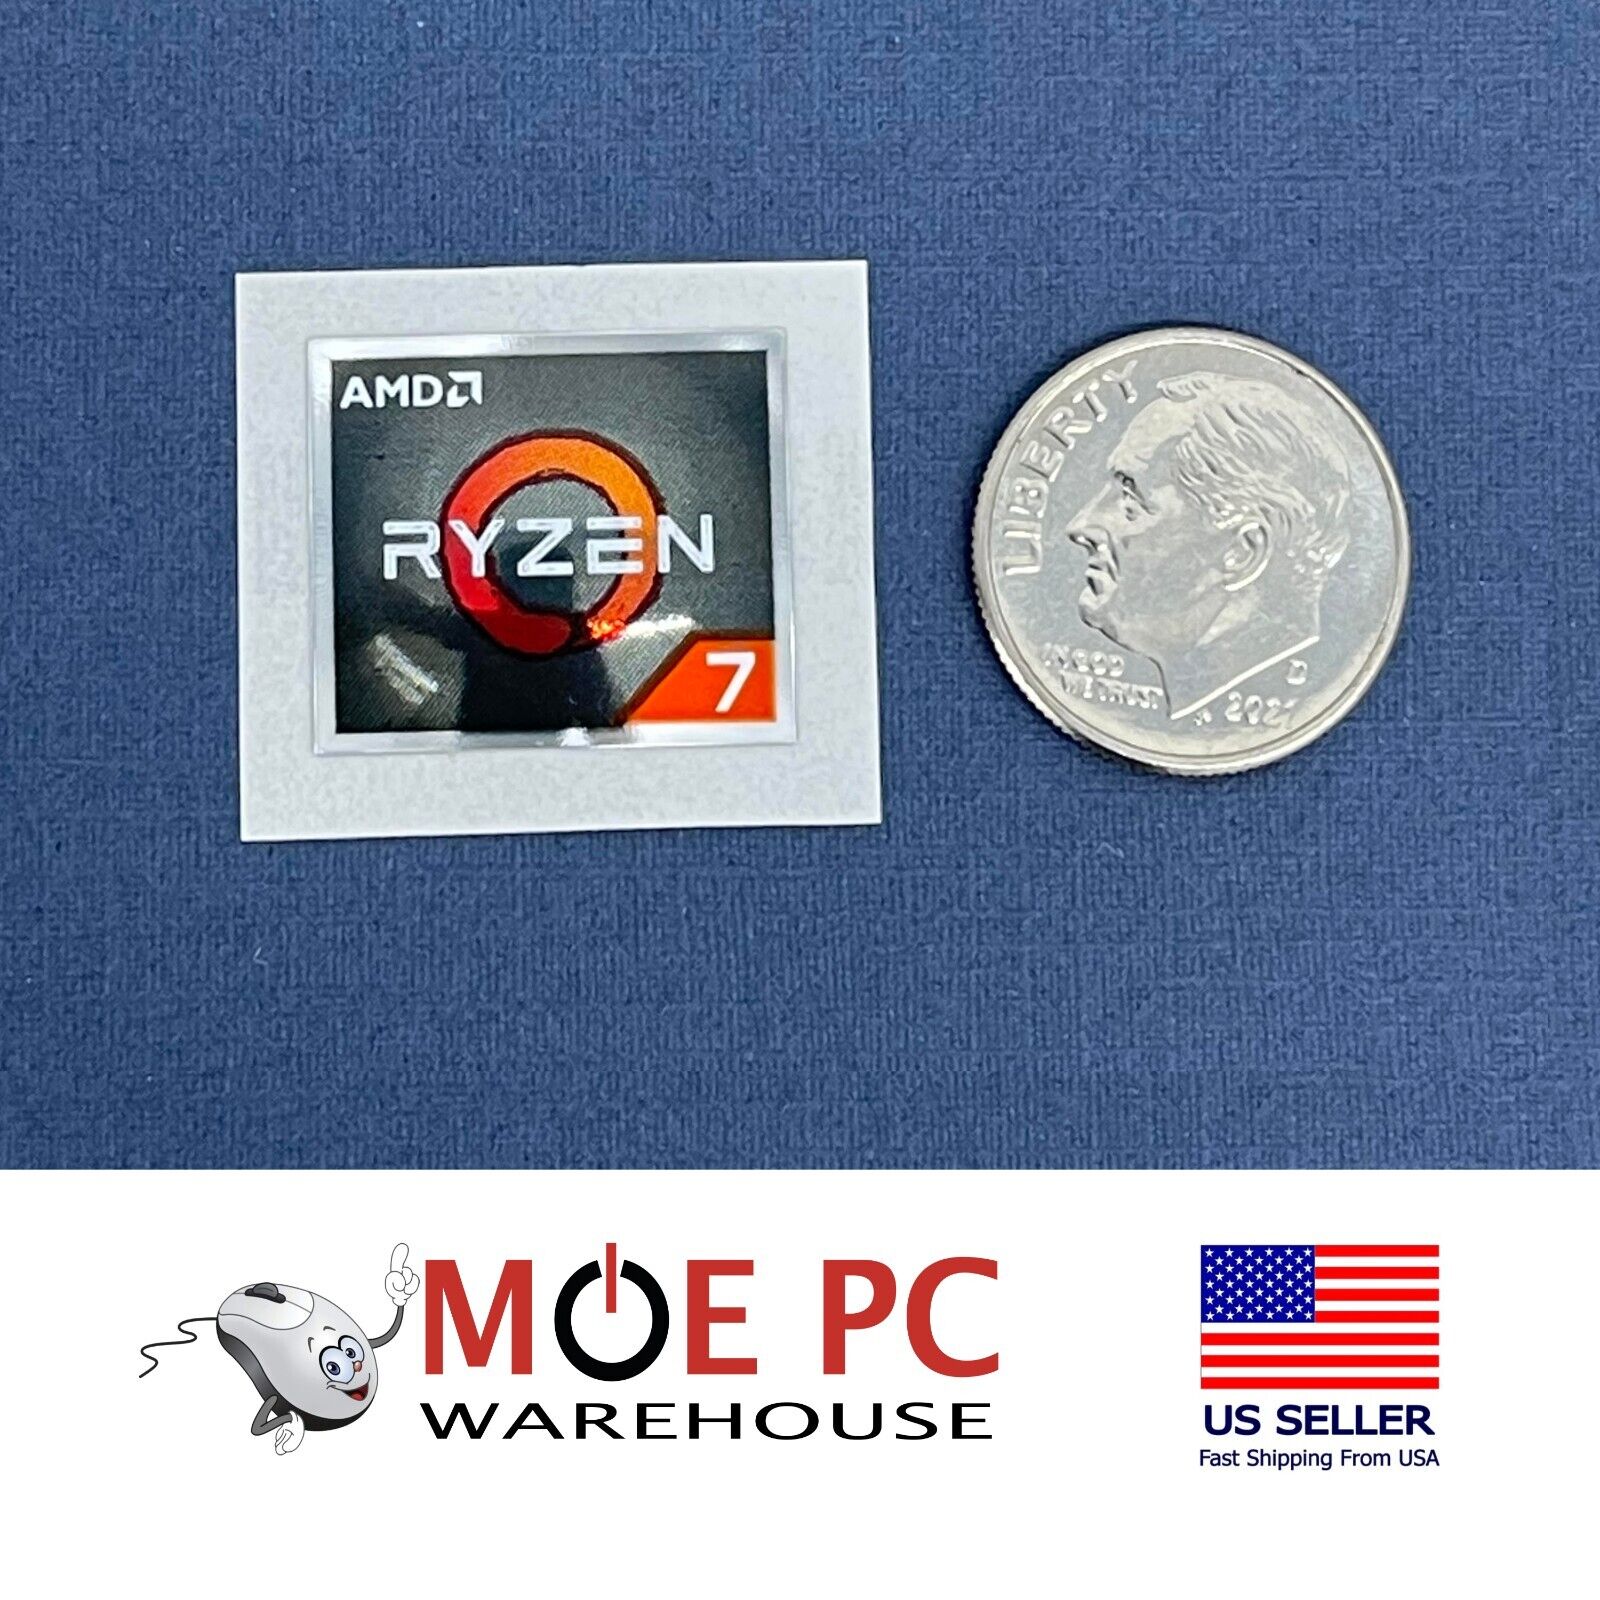 AMD RYZEN 7 Genuine LOGO STICKER/LABEL Excellent Quality. (USA Seller)